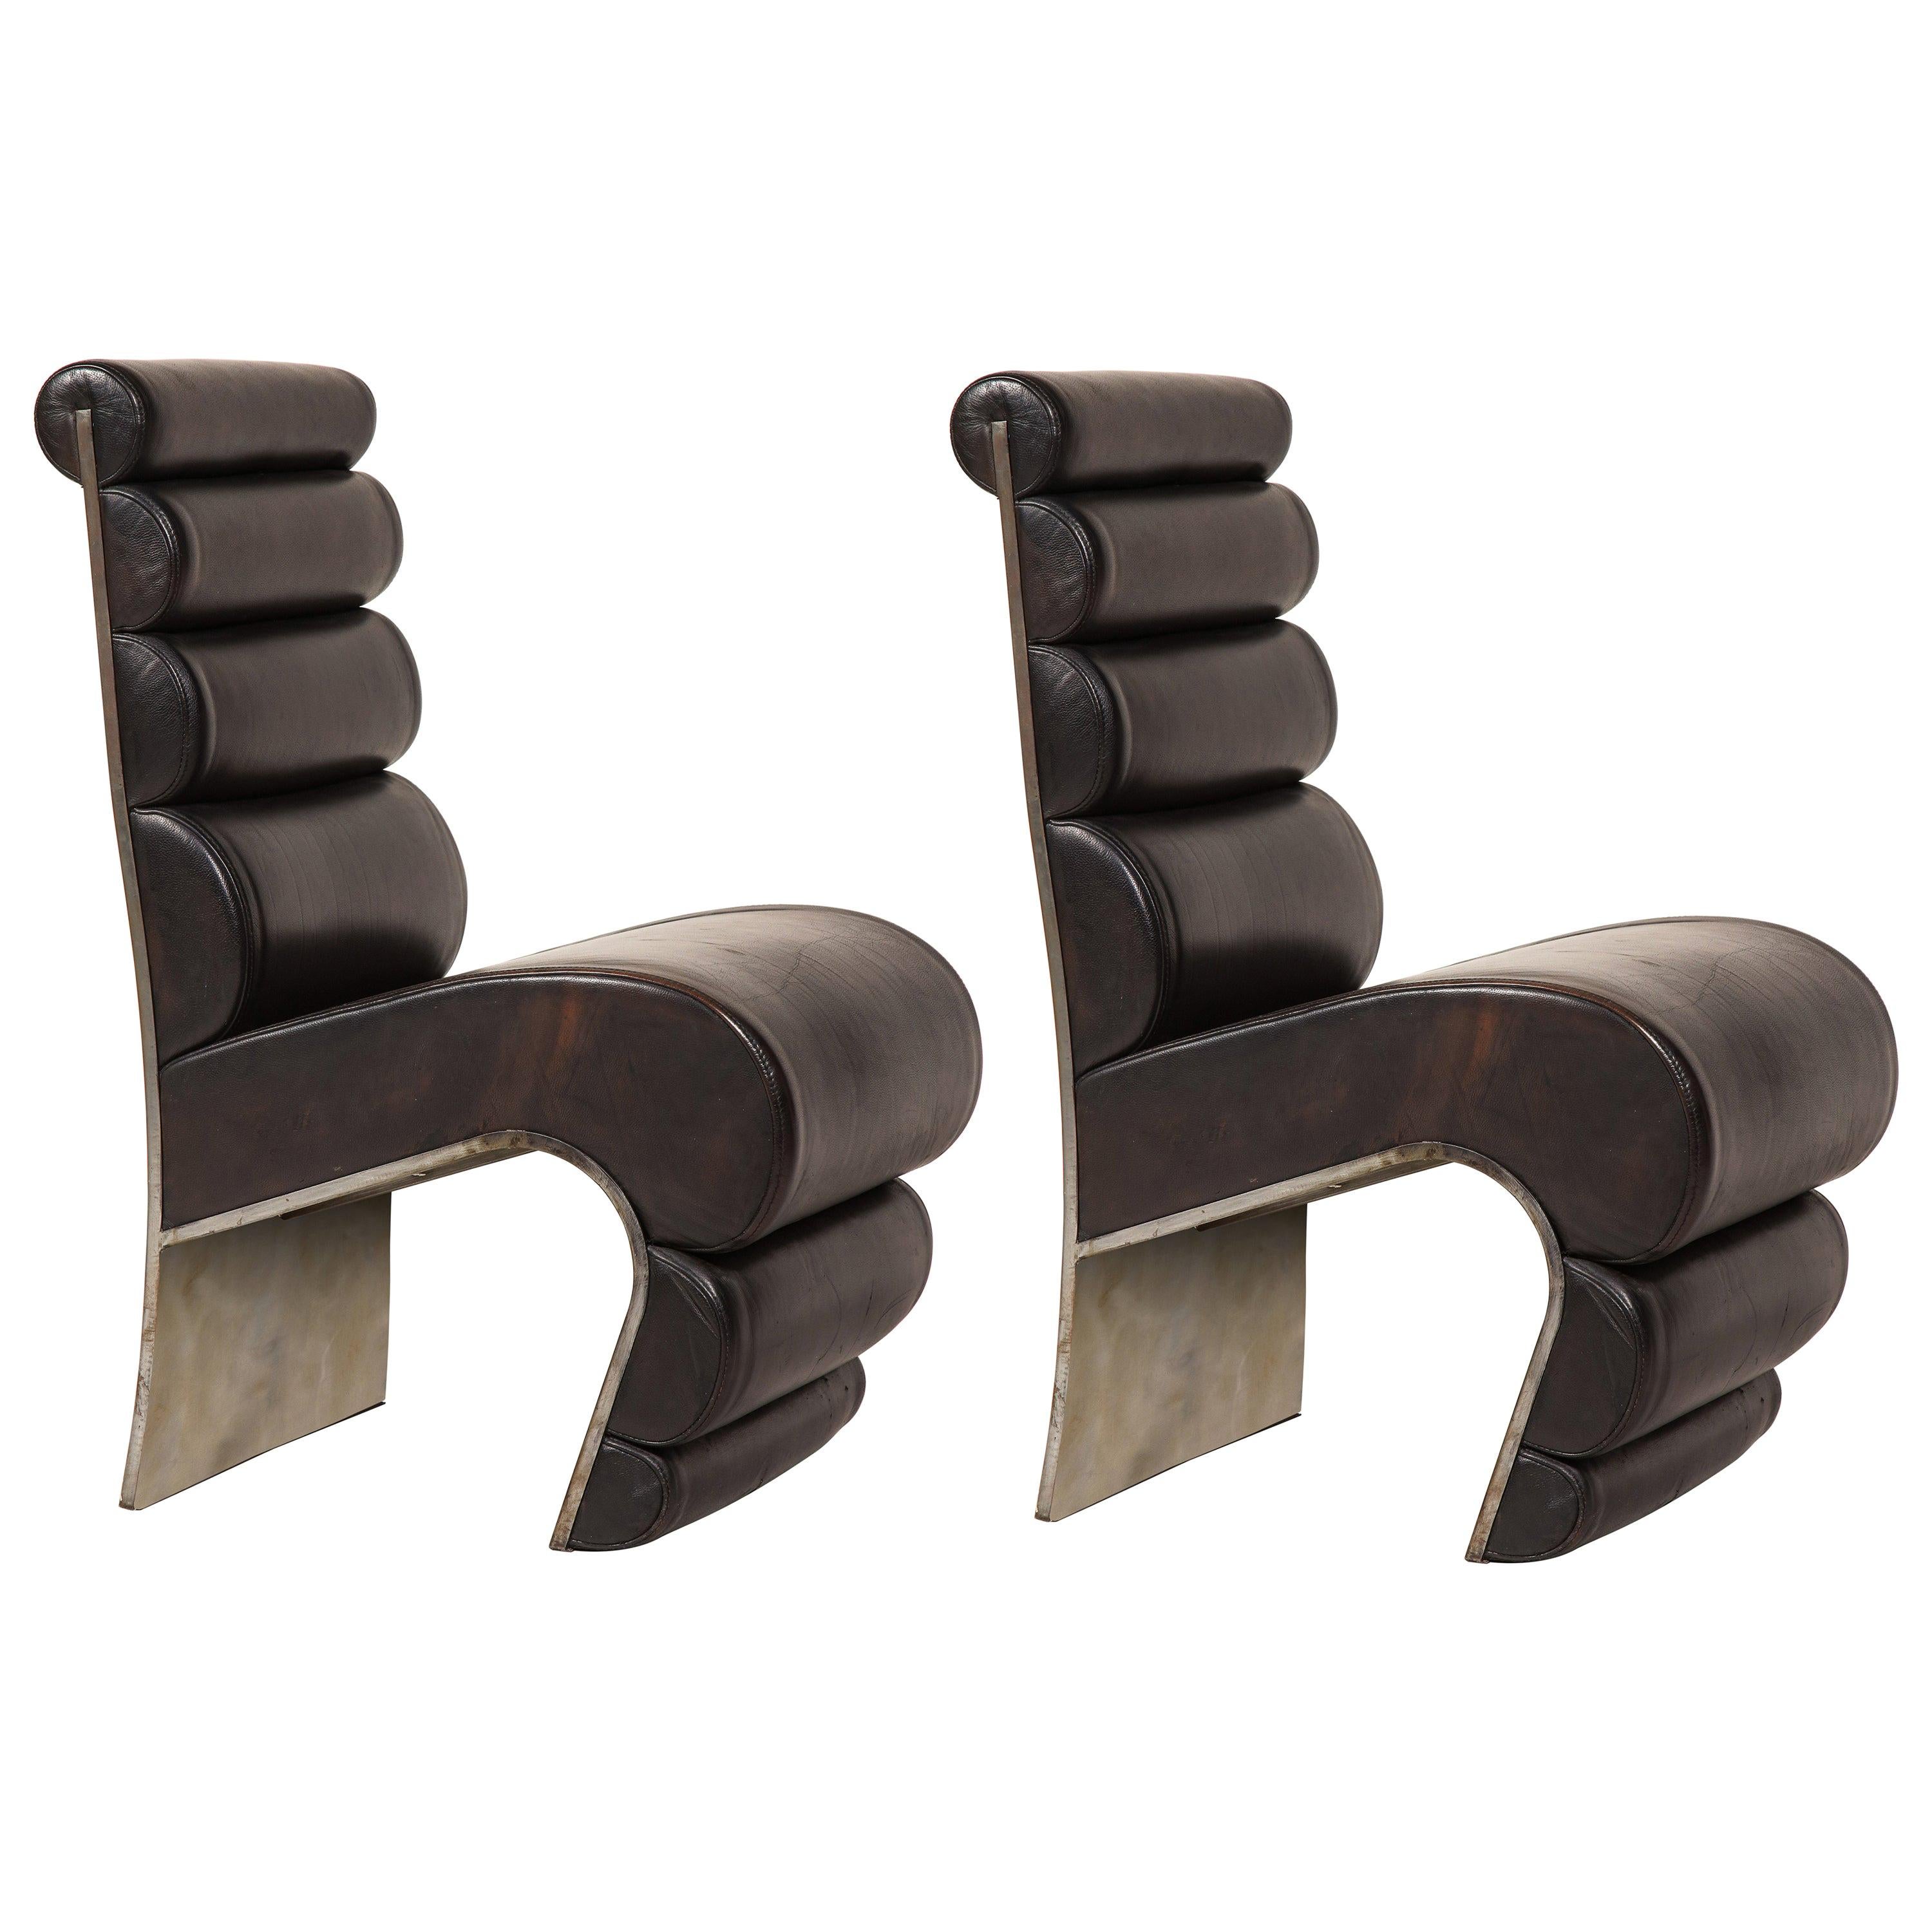 Paire de chaises françaises sculpturales en acier et cuir brun, années 1980, France

Il s'agit de très rares chaises en cuir et en acier provenant de France. De l'époque Maria Pergay, Michel Boyer. Le cuir est en très bon état. Ils sont vraiment